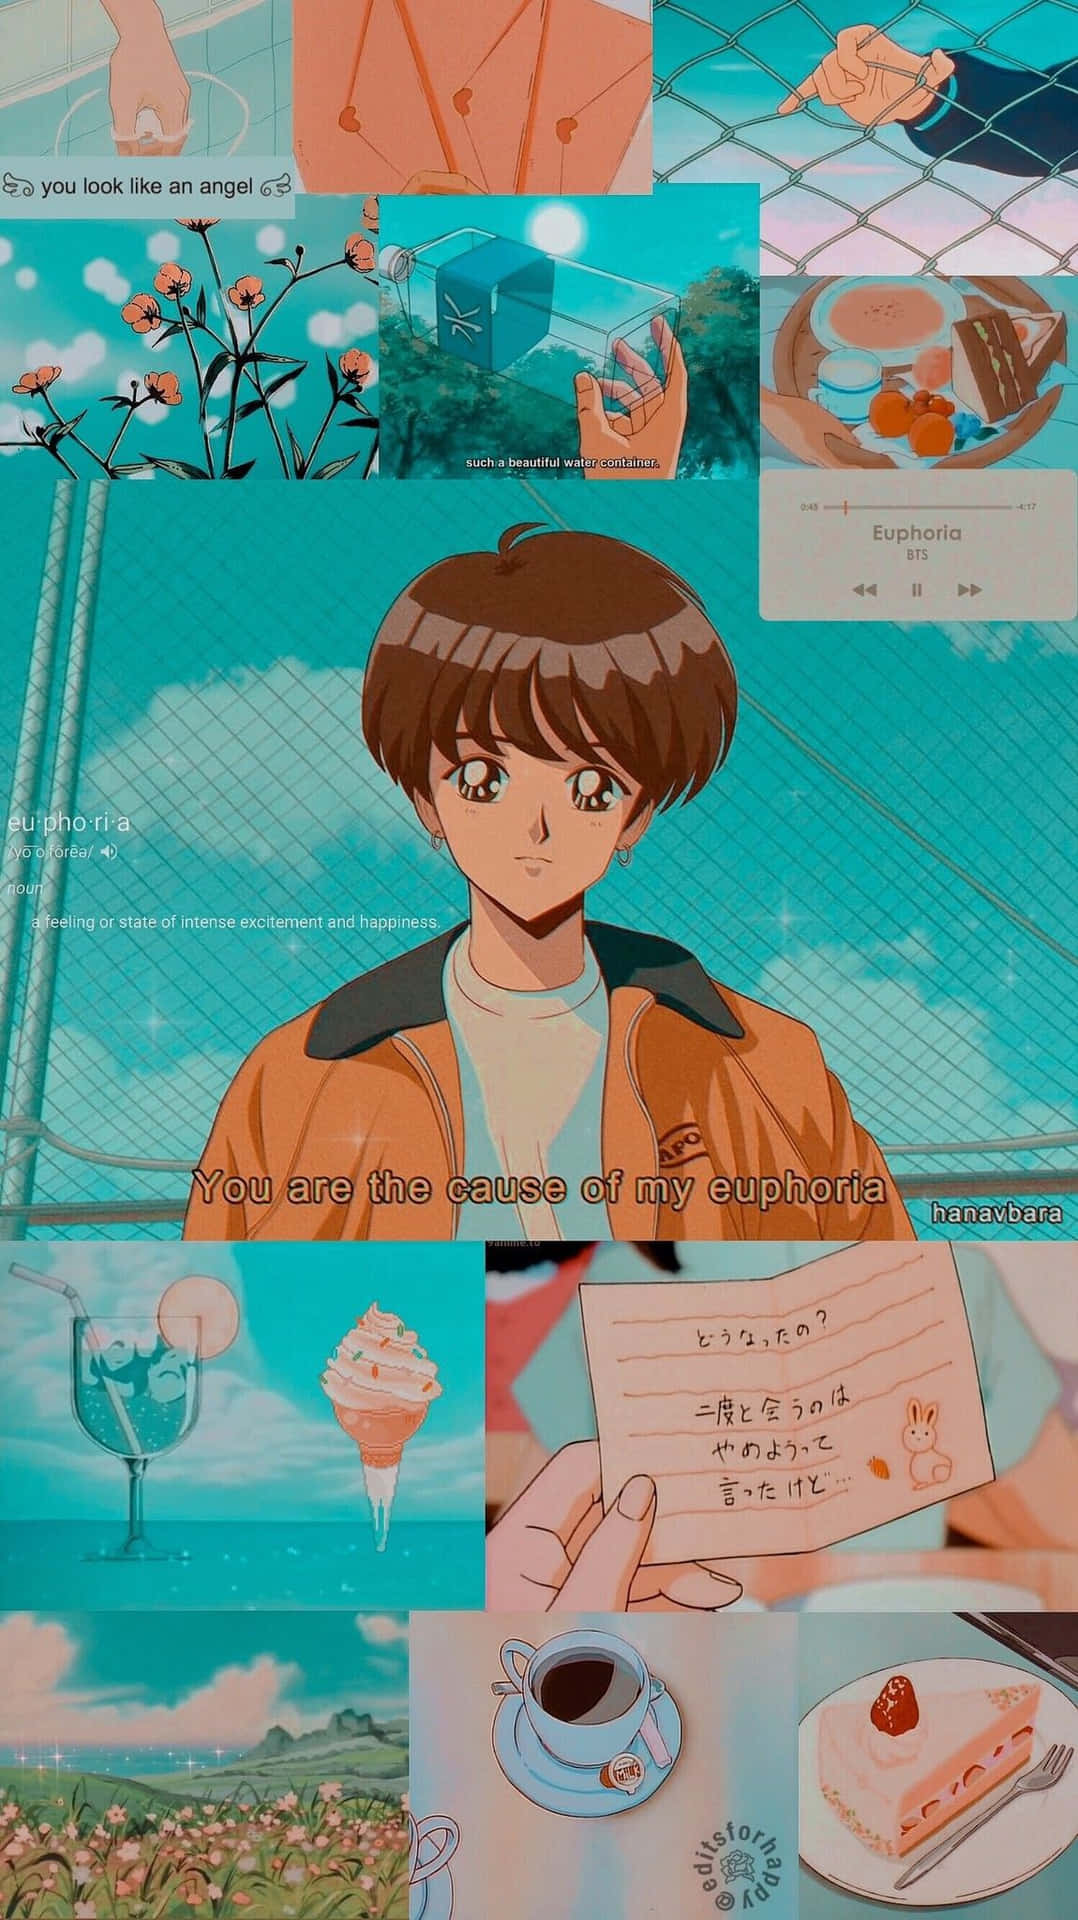 Einecollage Aus Anime-bildern Mit Verschiedenen Motiven. Wallpaper